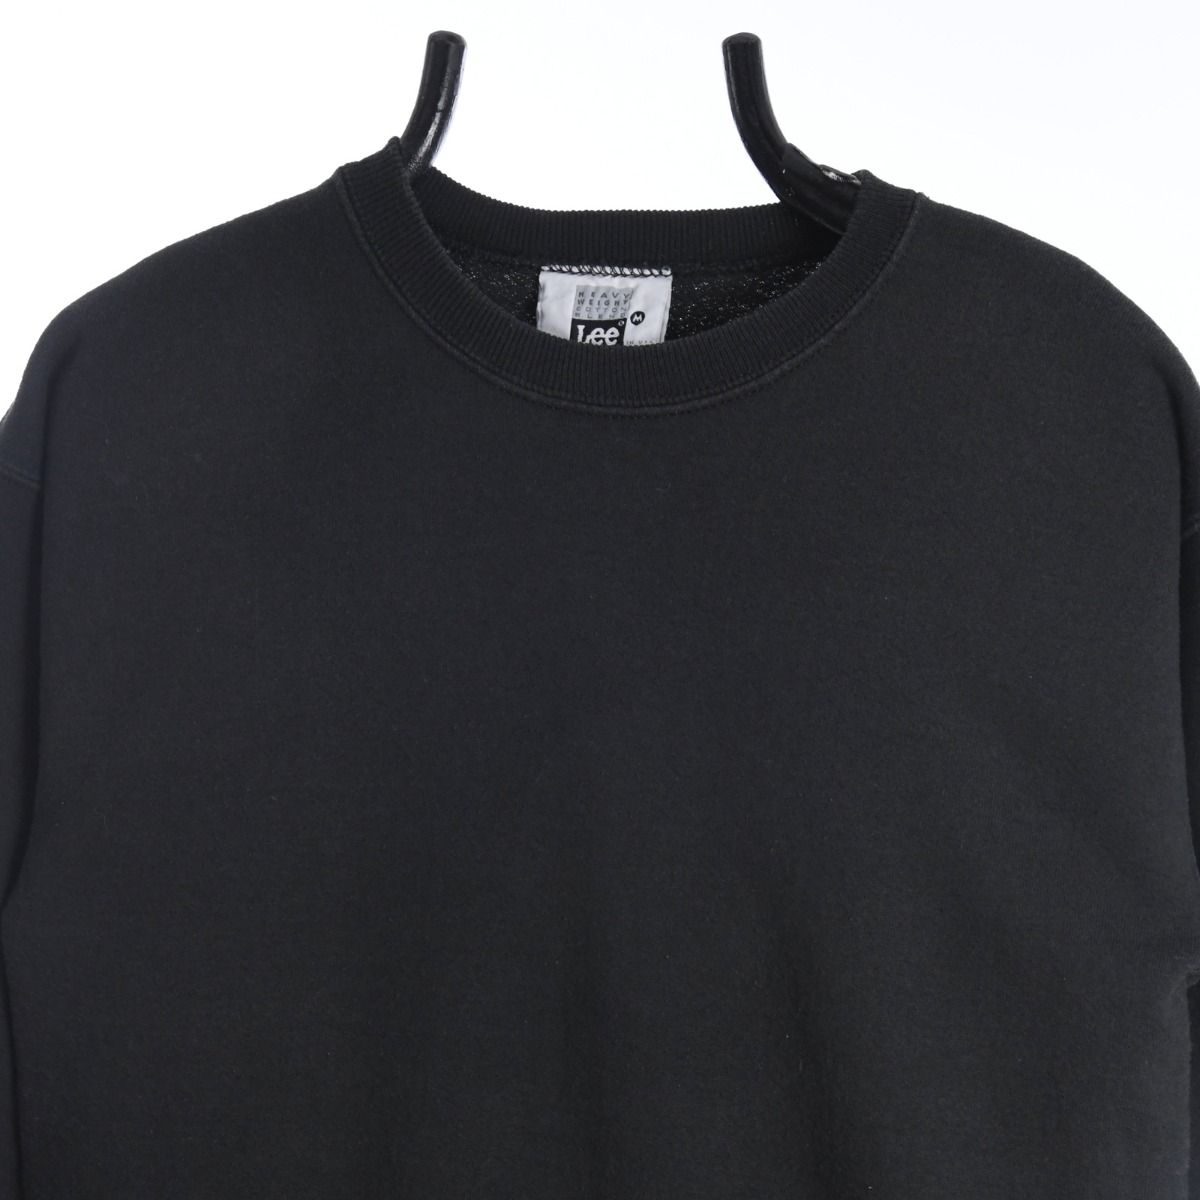 Lee 1990s Blank Black Sweatshirt